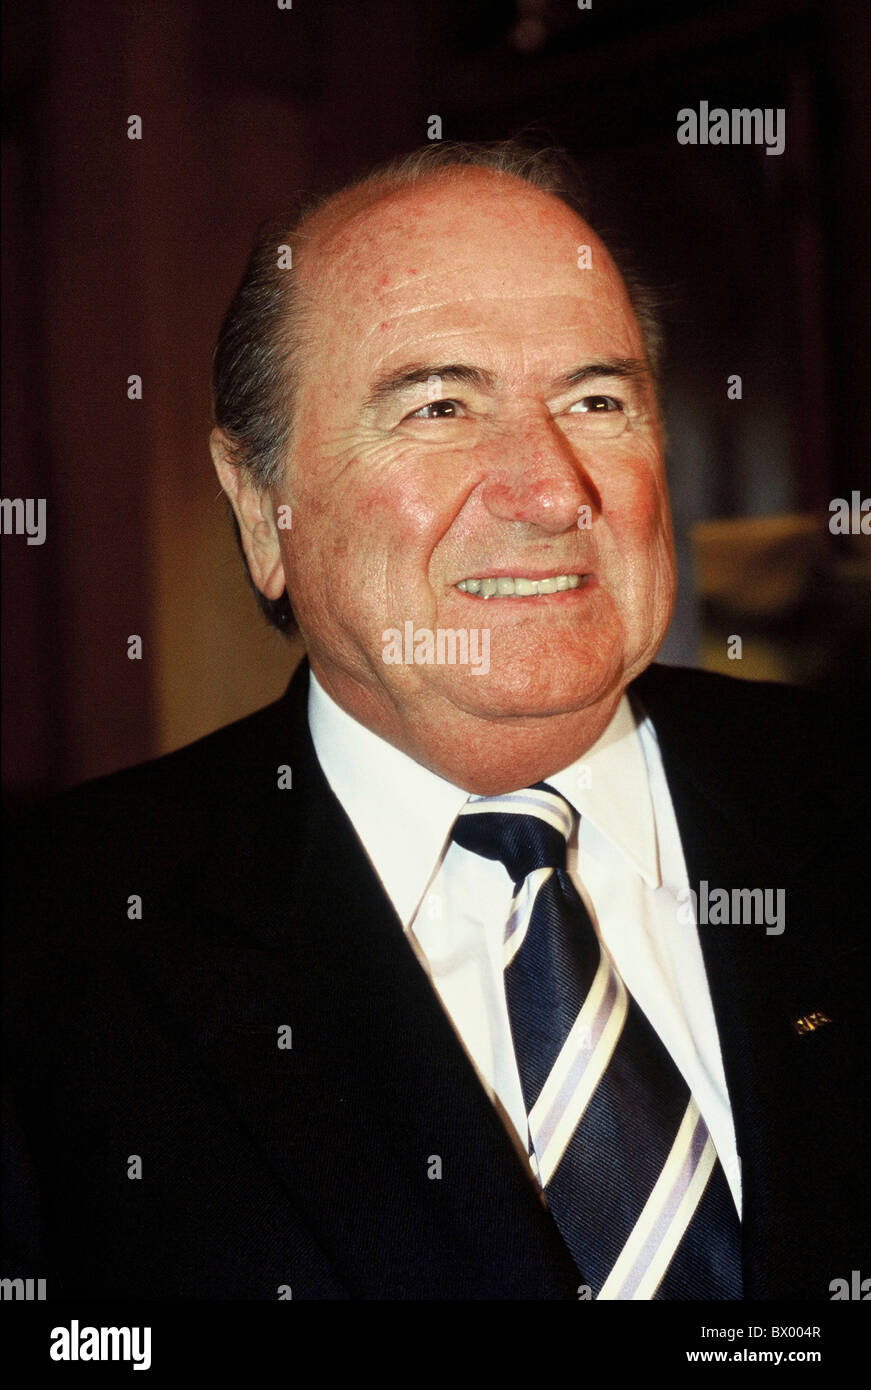 Ridere nessun modello di rilascio ritratto presidente FIFA Sepp Blatter soccer Foto Stock